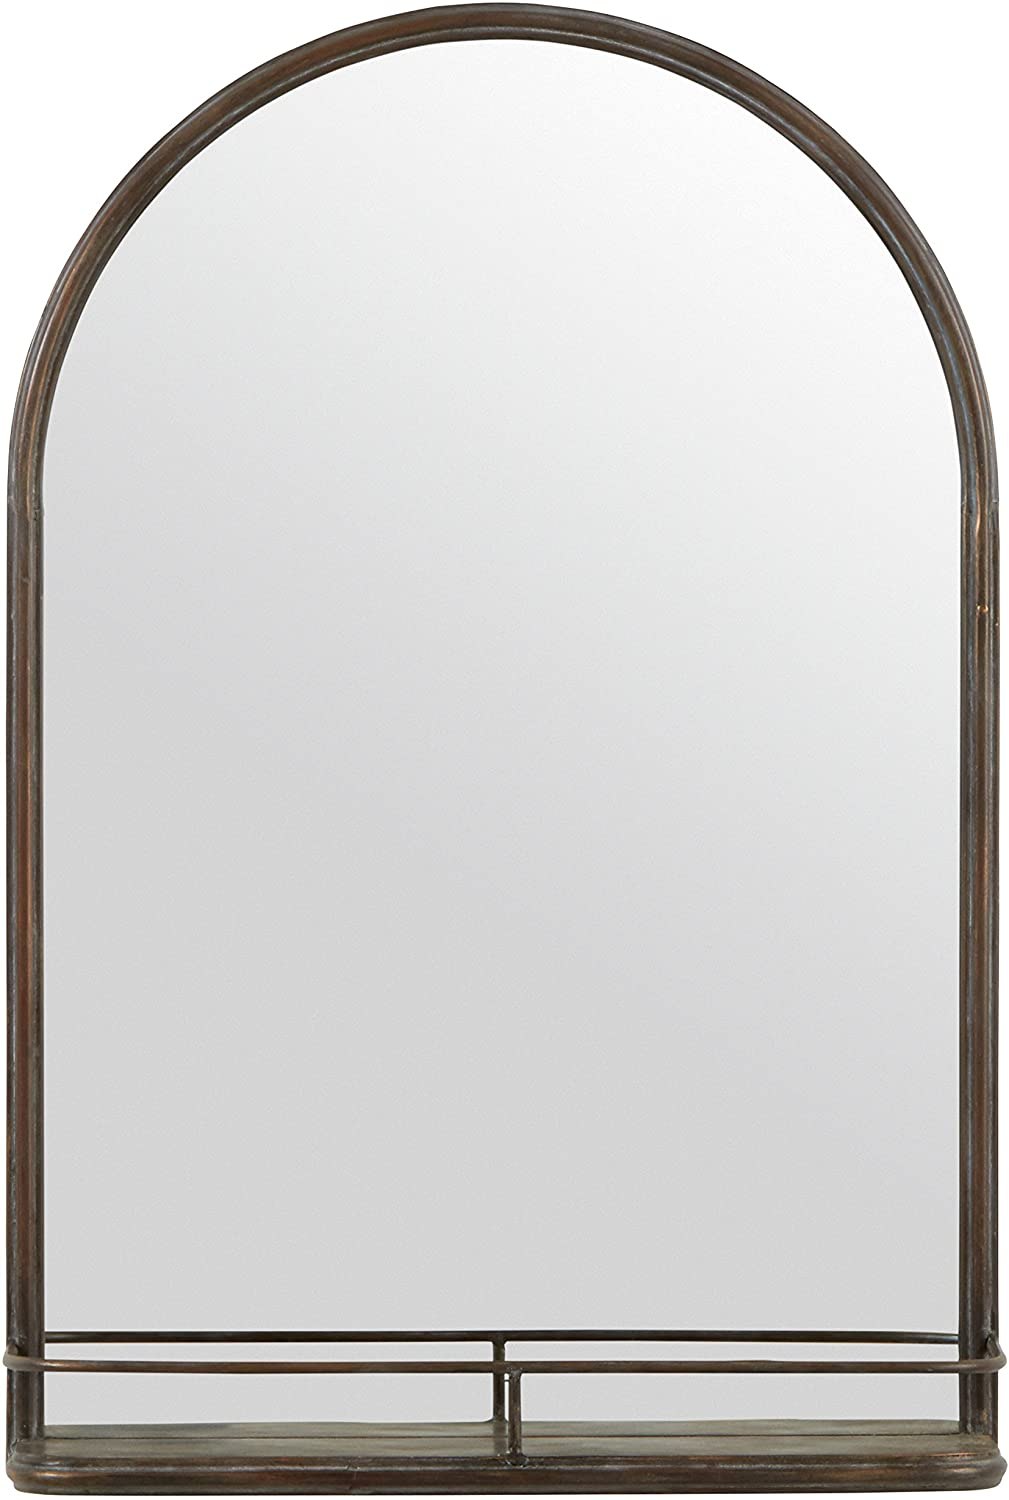 amazon arhead mirror